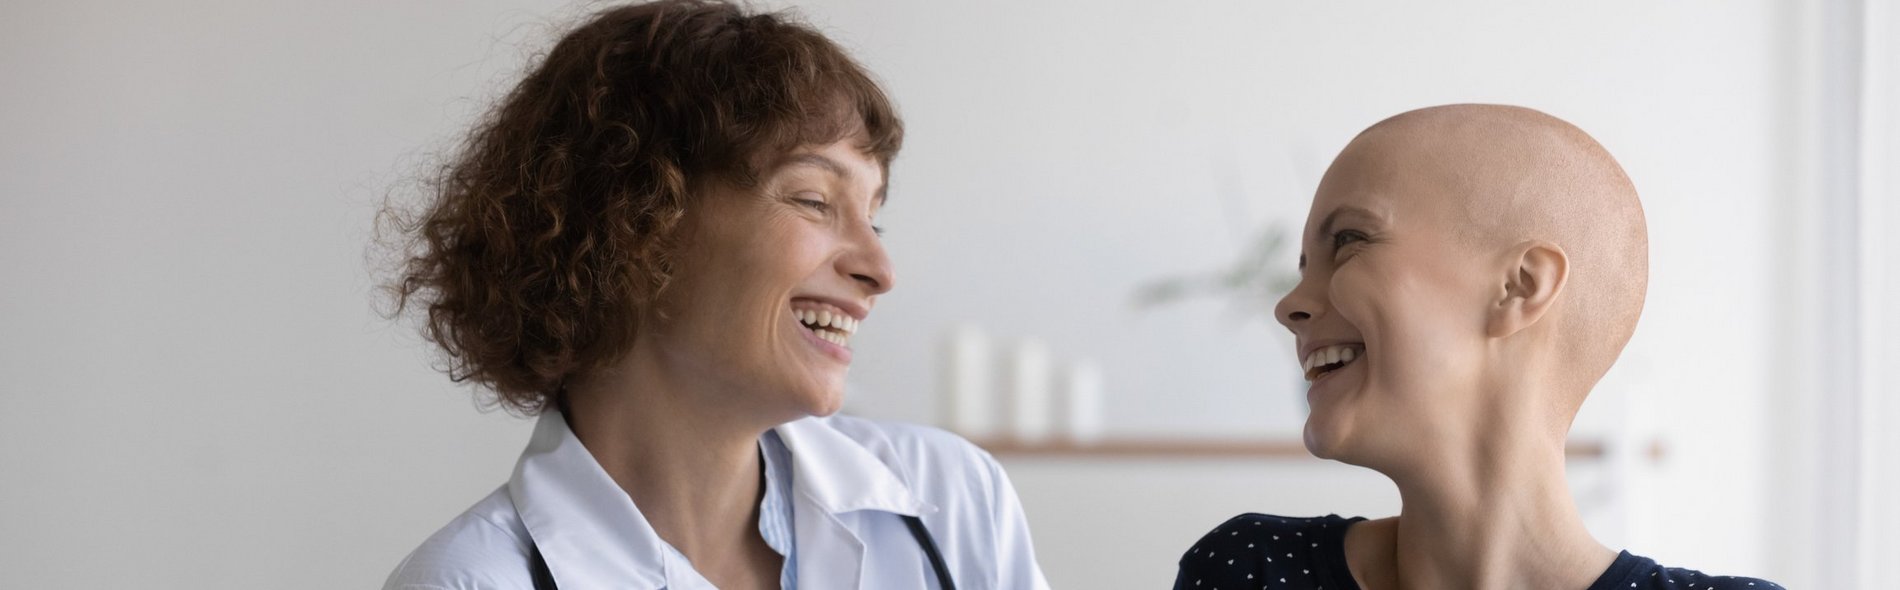 Eine junge Patientin ohne Haare und eine Ärztin lachen zusammen